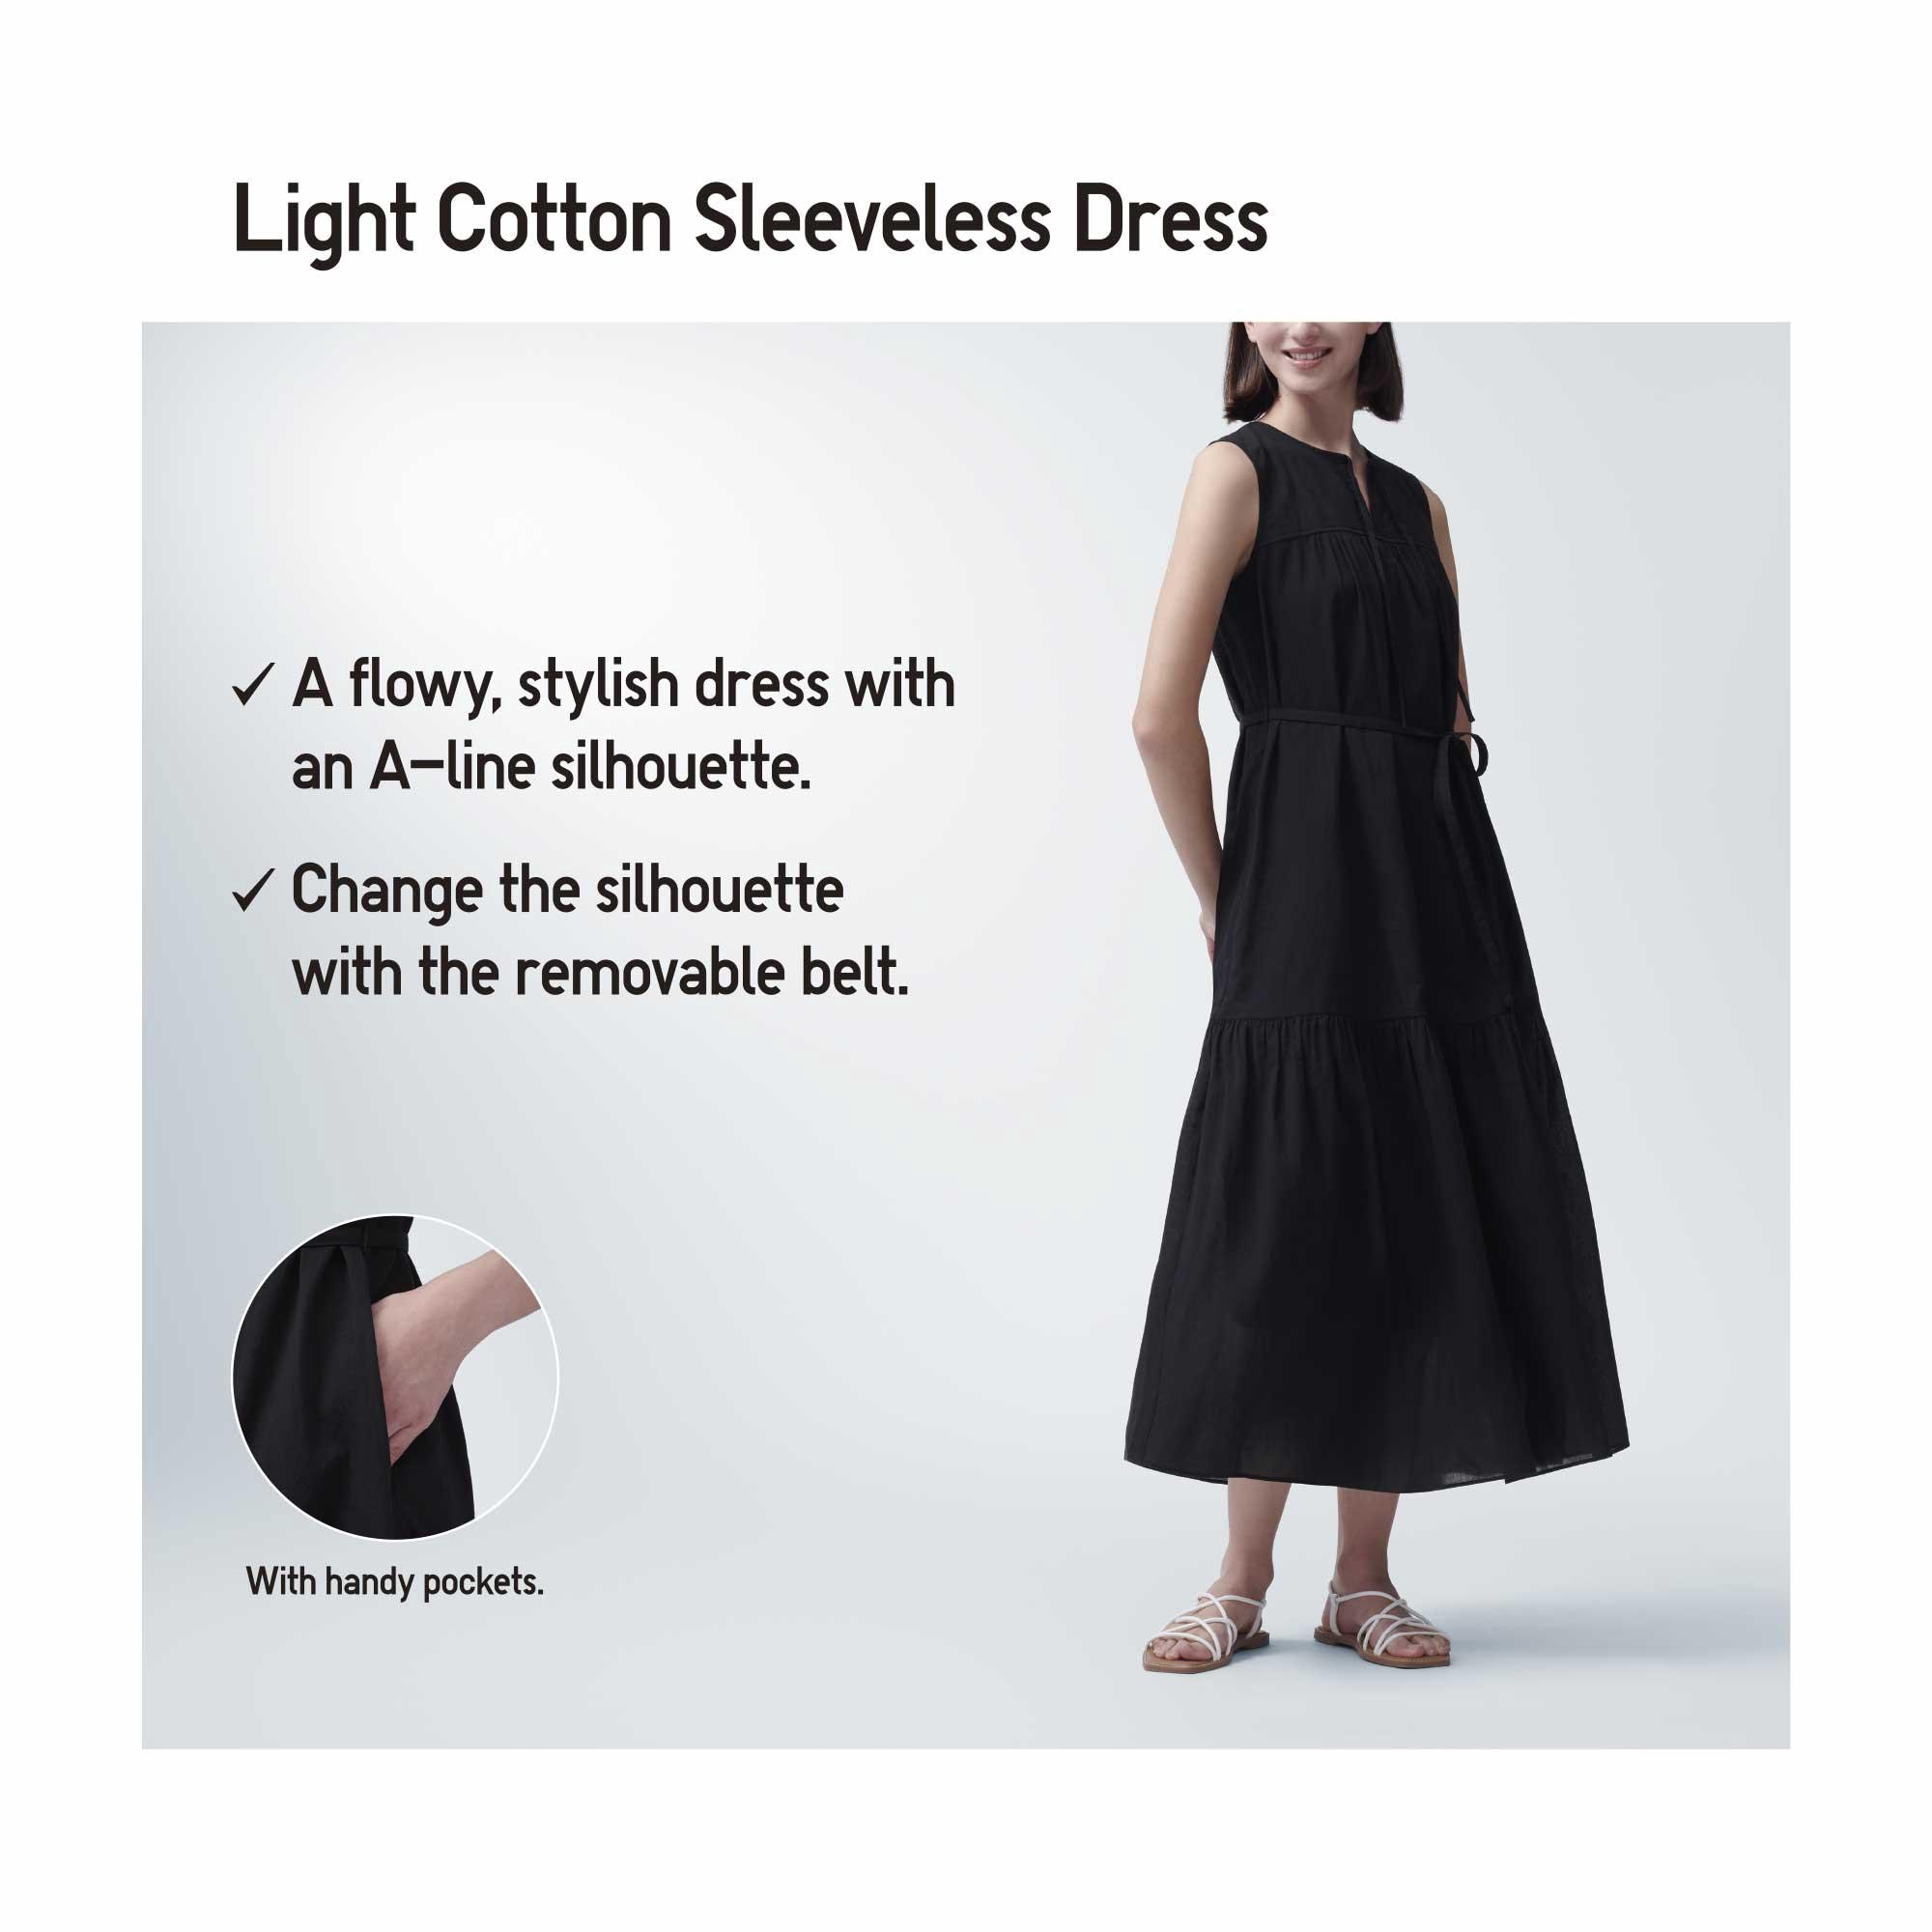 LIGHT COTTON SLEEVELESS DRESS